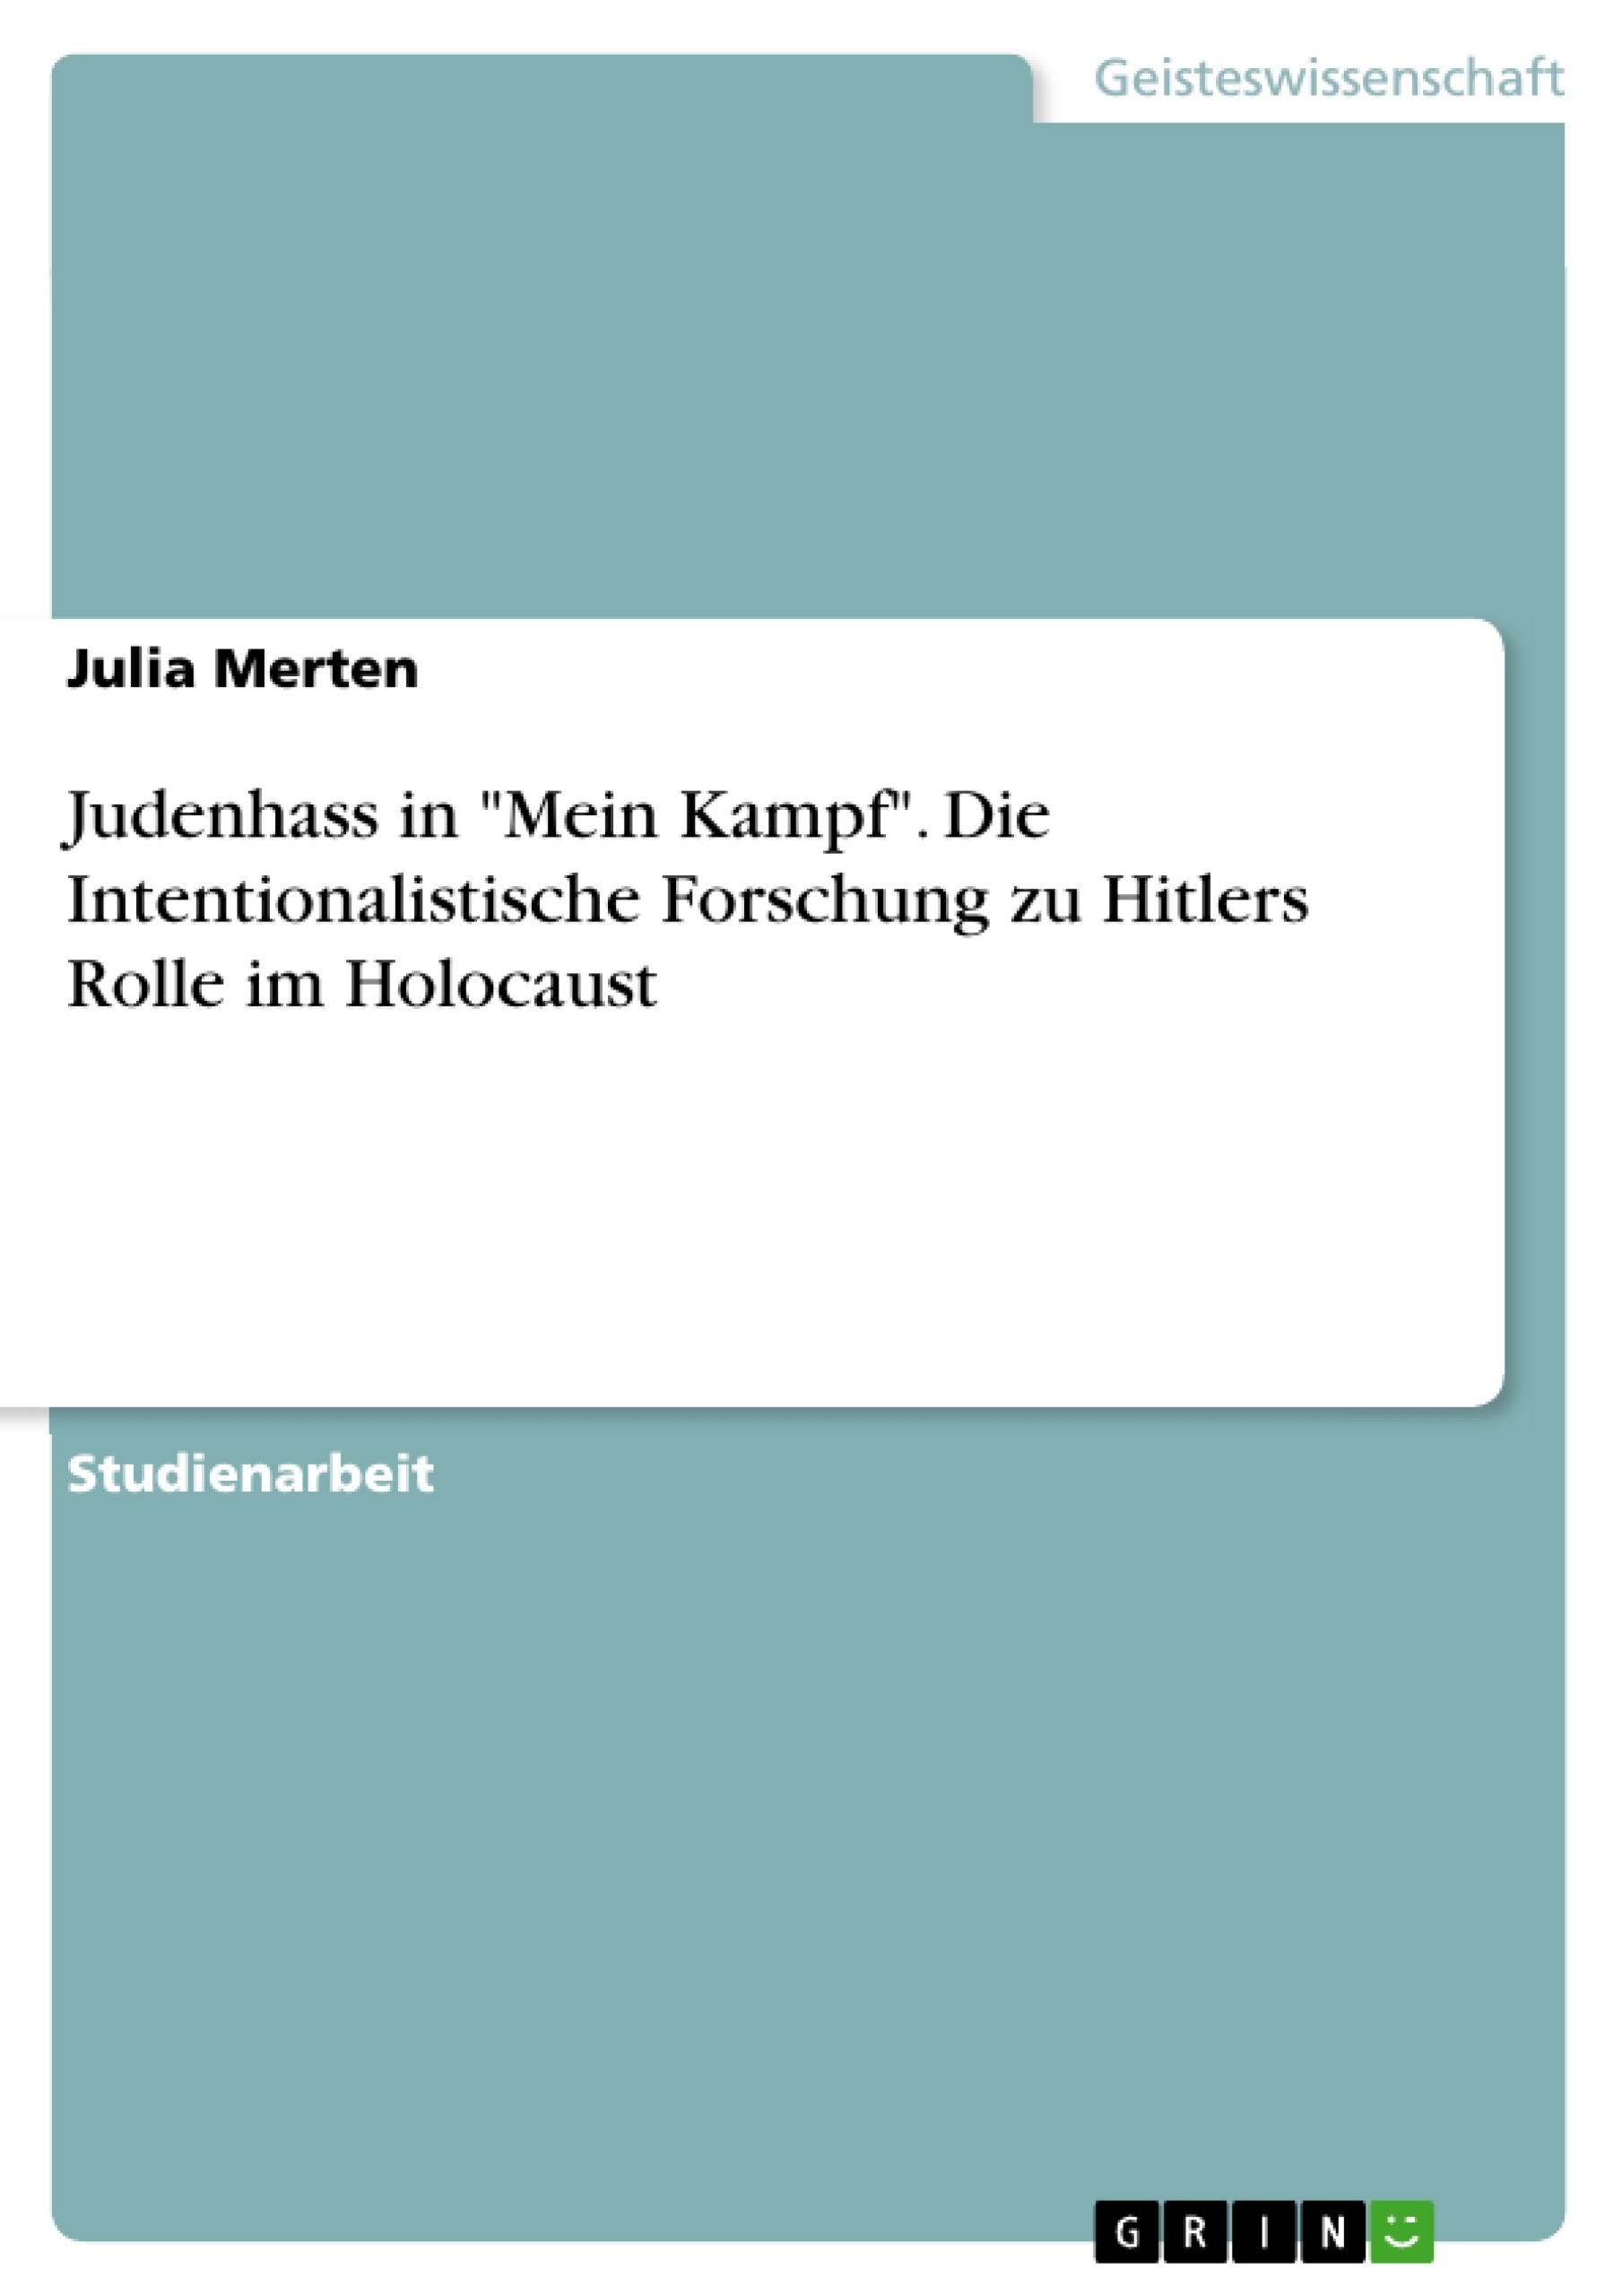 Titre: Judenhass in "Mein Kampf". Die Intentionalistische Forschung zu Hitlers Rolle im Holocaust